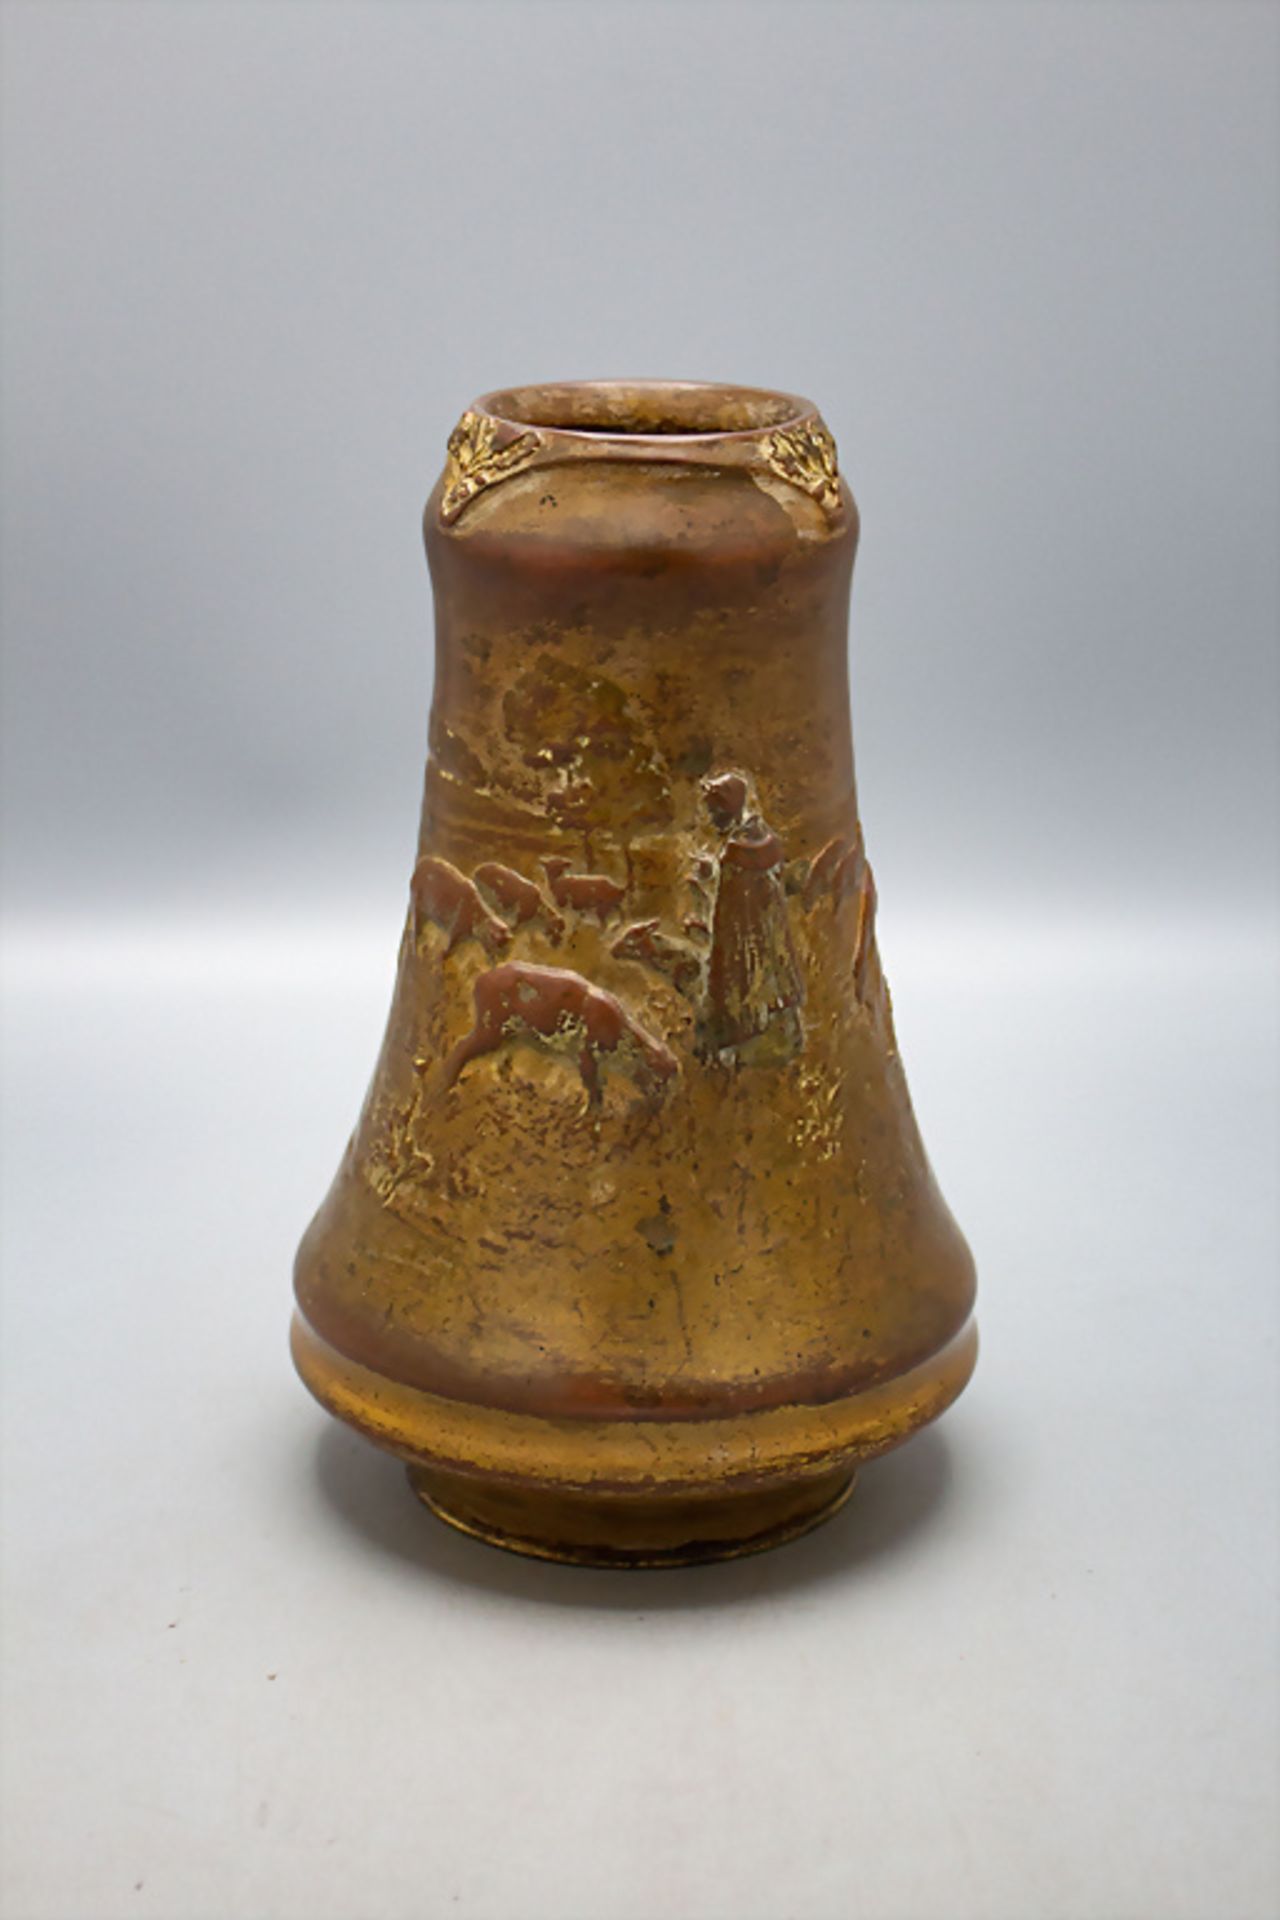 Charles KORSCHANN (1872-1942), Jugendstil Bronze Vase / An Art Nouveau bronze vase, um 1900